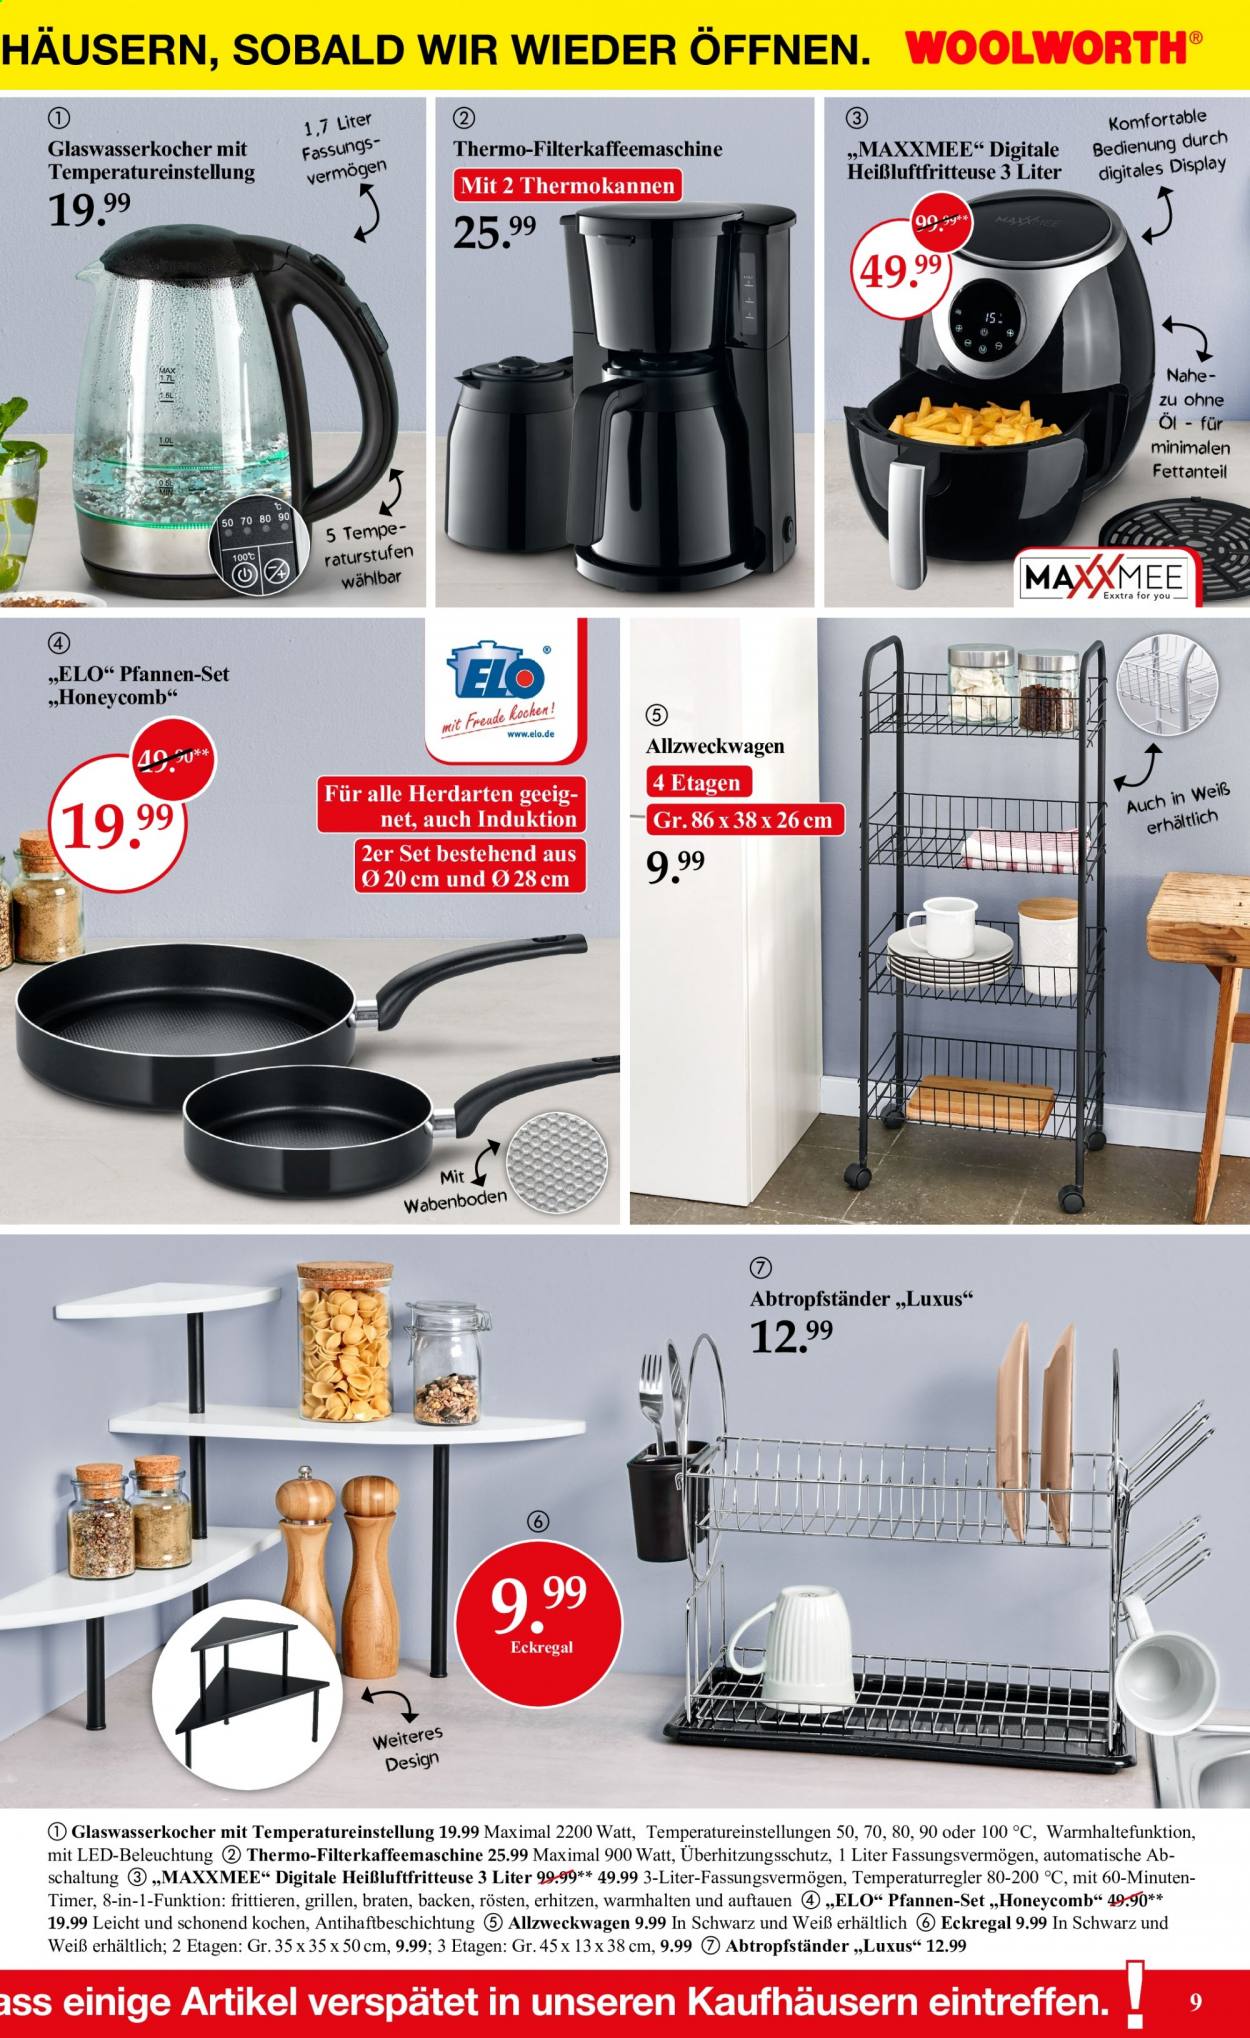 thumbnail - Prospekte Woolworth - Produkte in Aktion - Eckregal, Öl, Bratpfannen-set, Pfanne, Pfannen-set, Heißluftfritteuse. Seite 9.